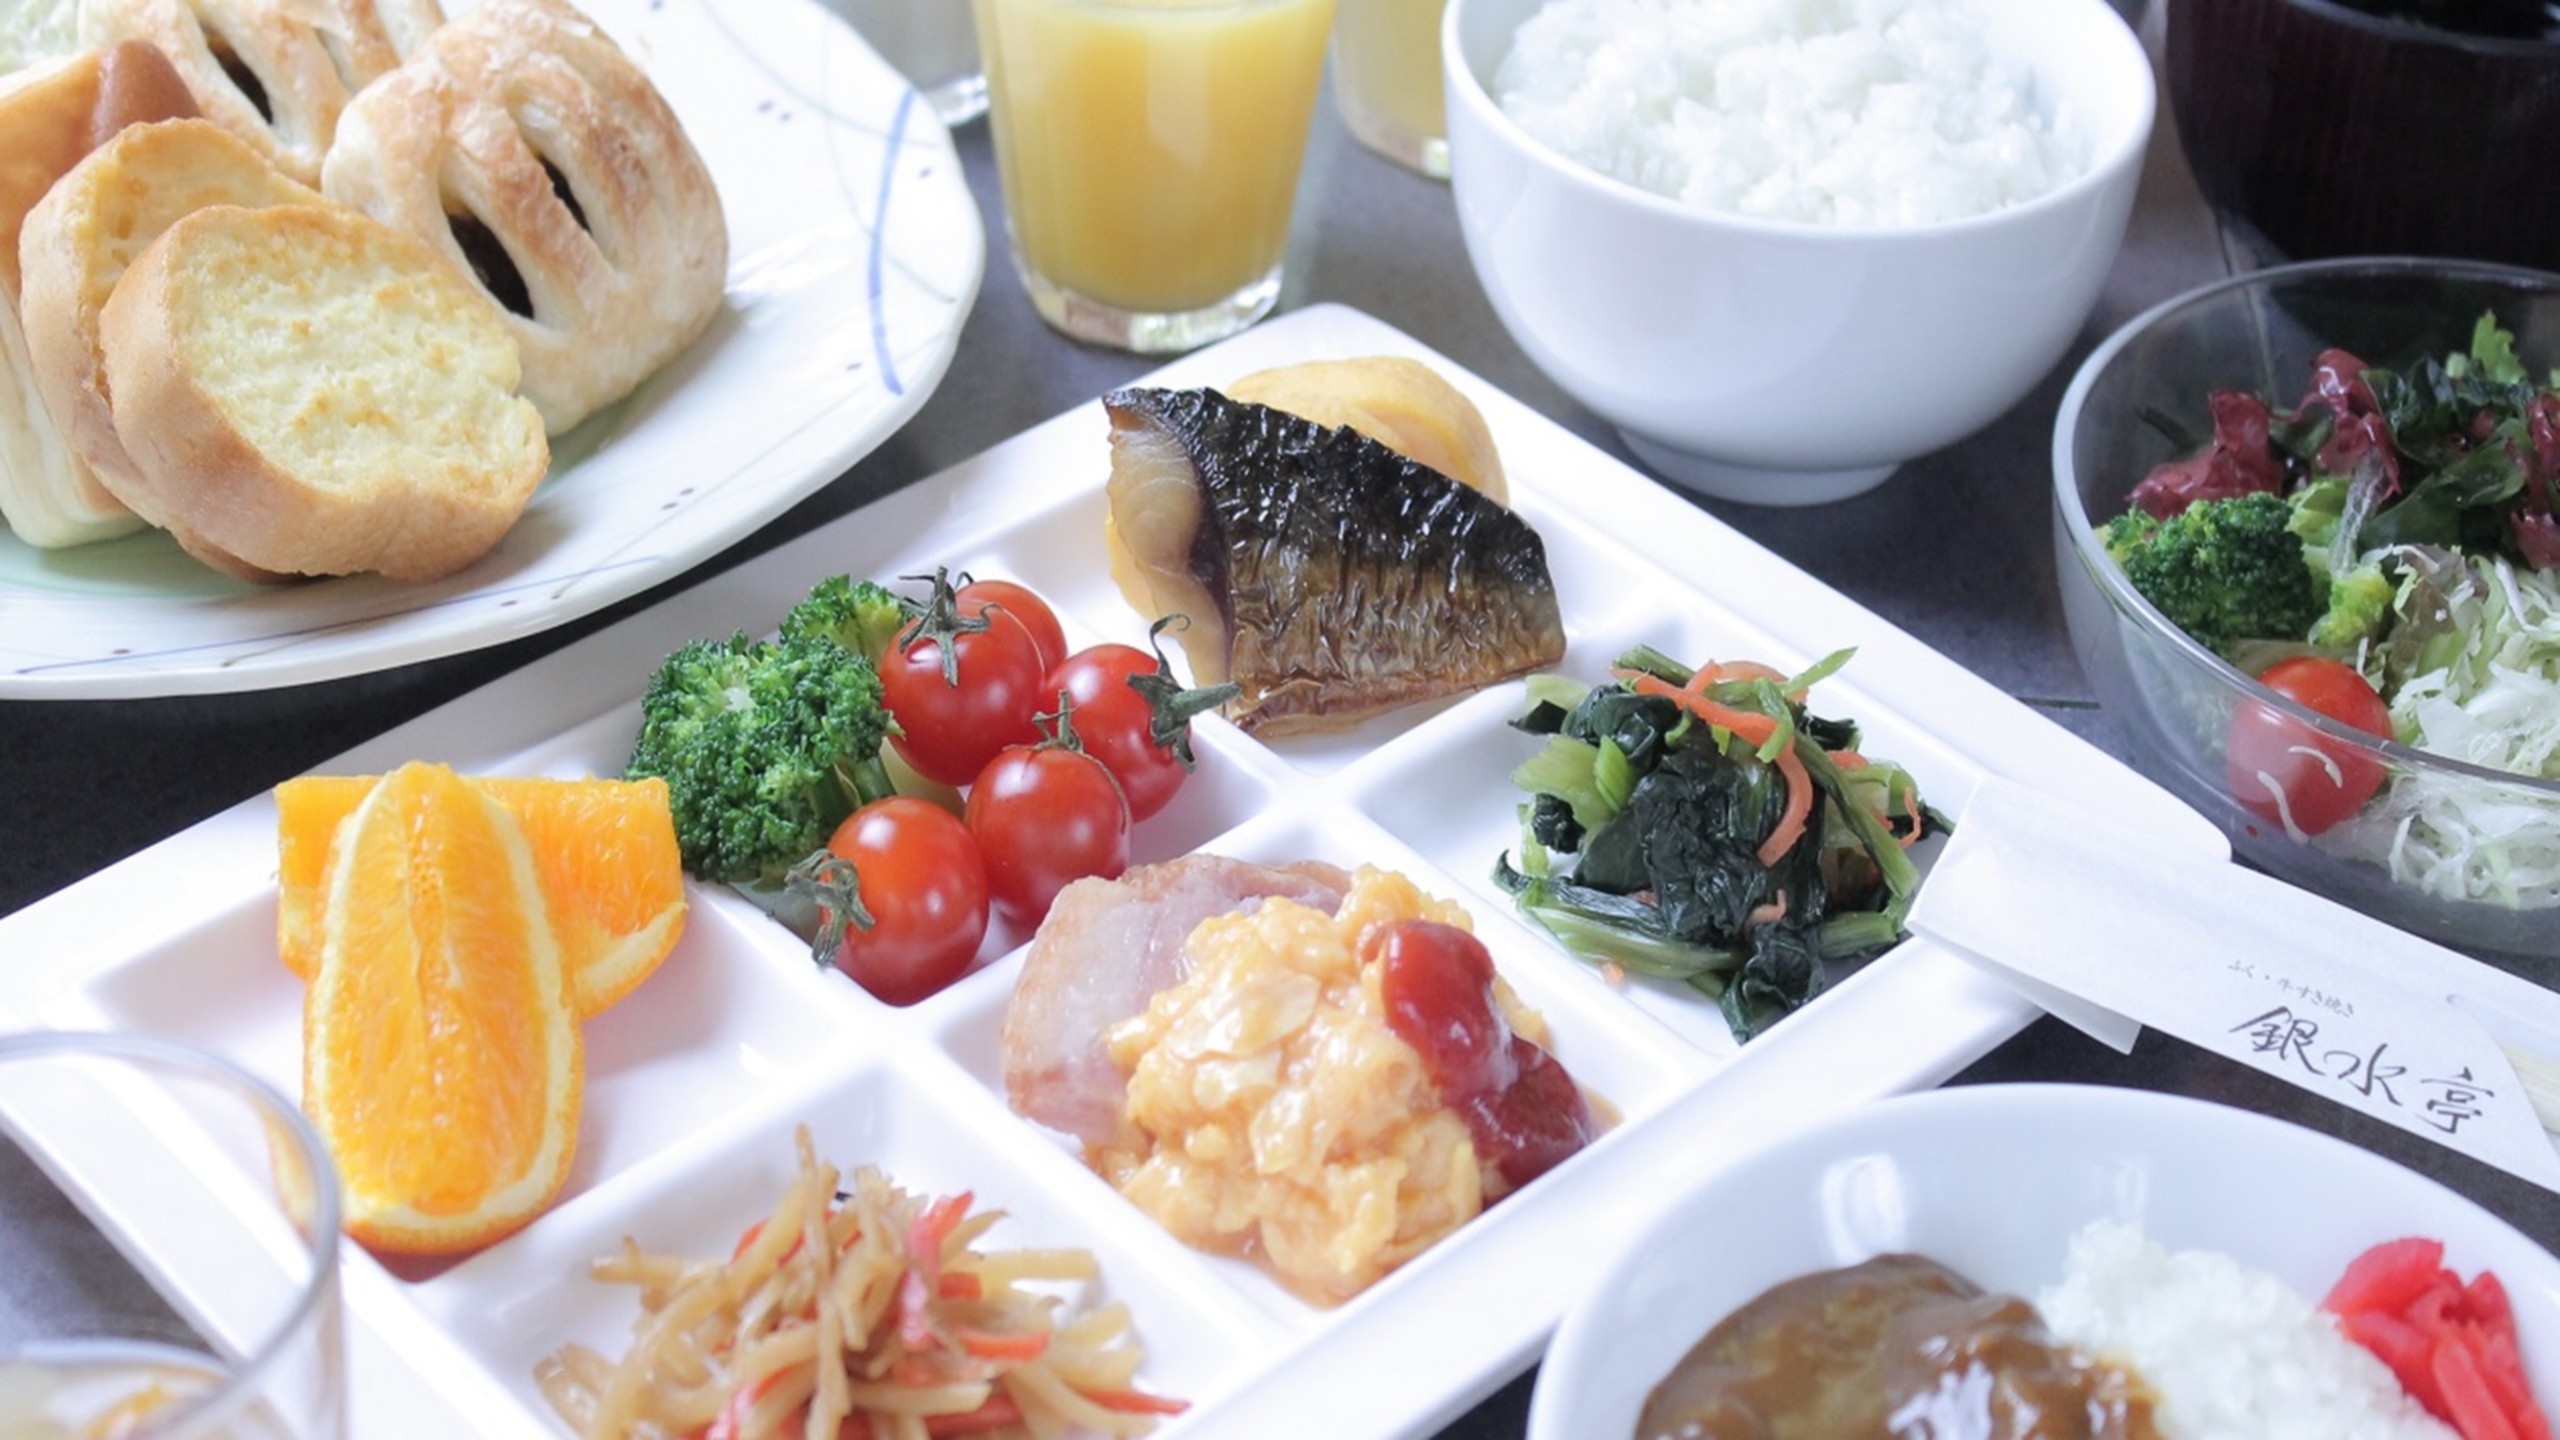 【朝食バイキング付】■一日の始まりは美味しい朝食から ■「北九州空港」からリムジンバスで約35分 